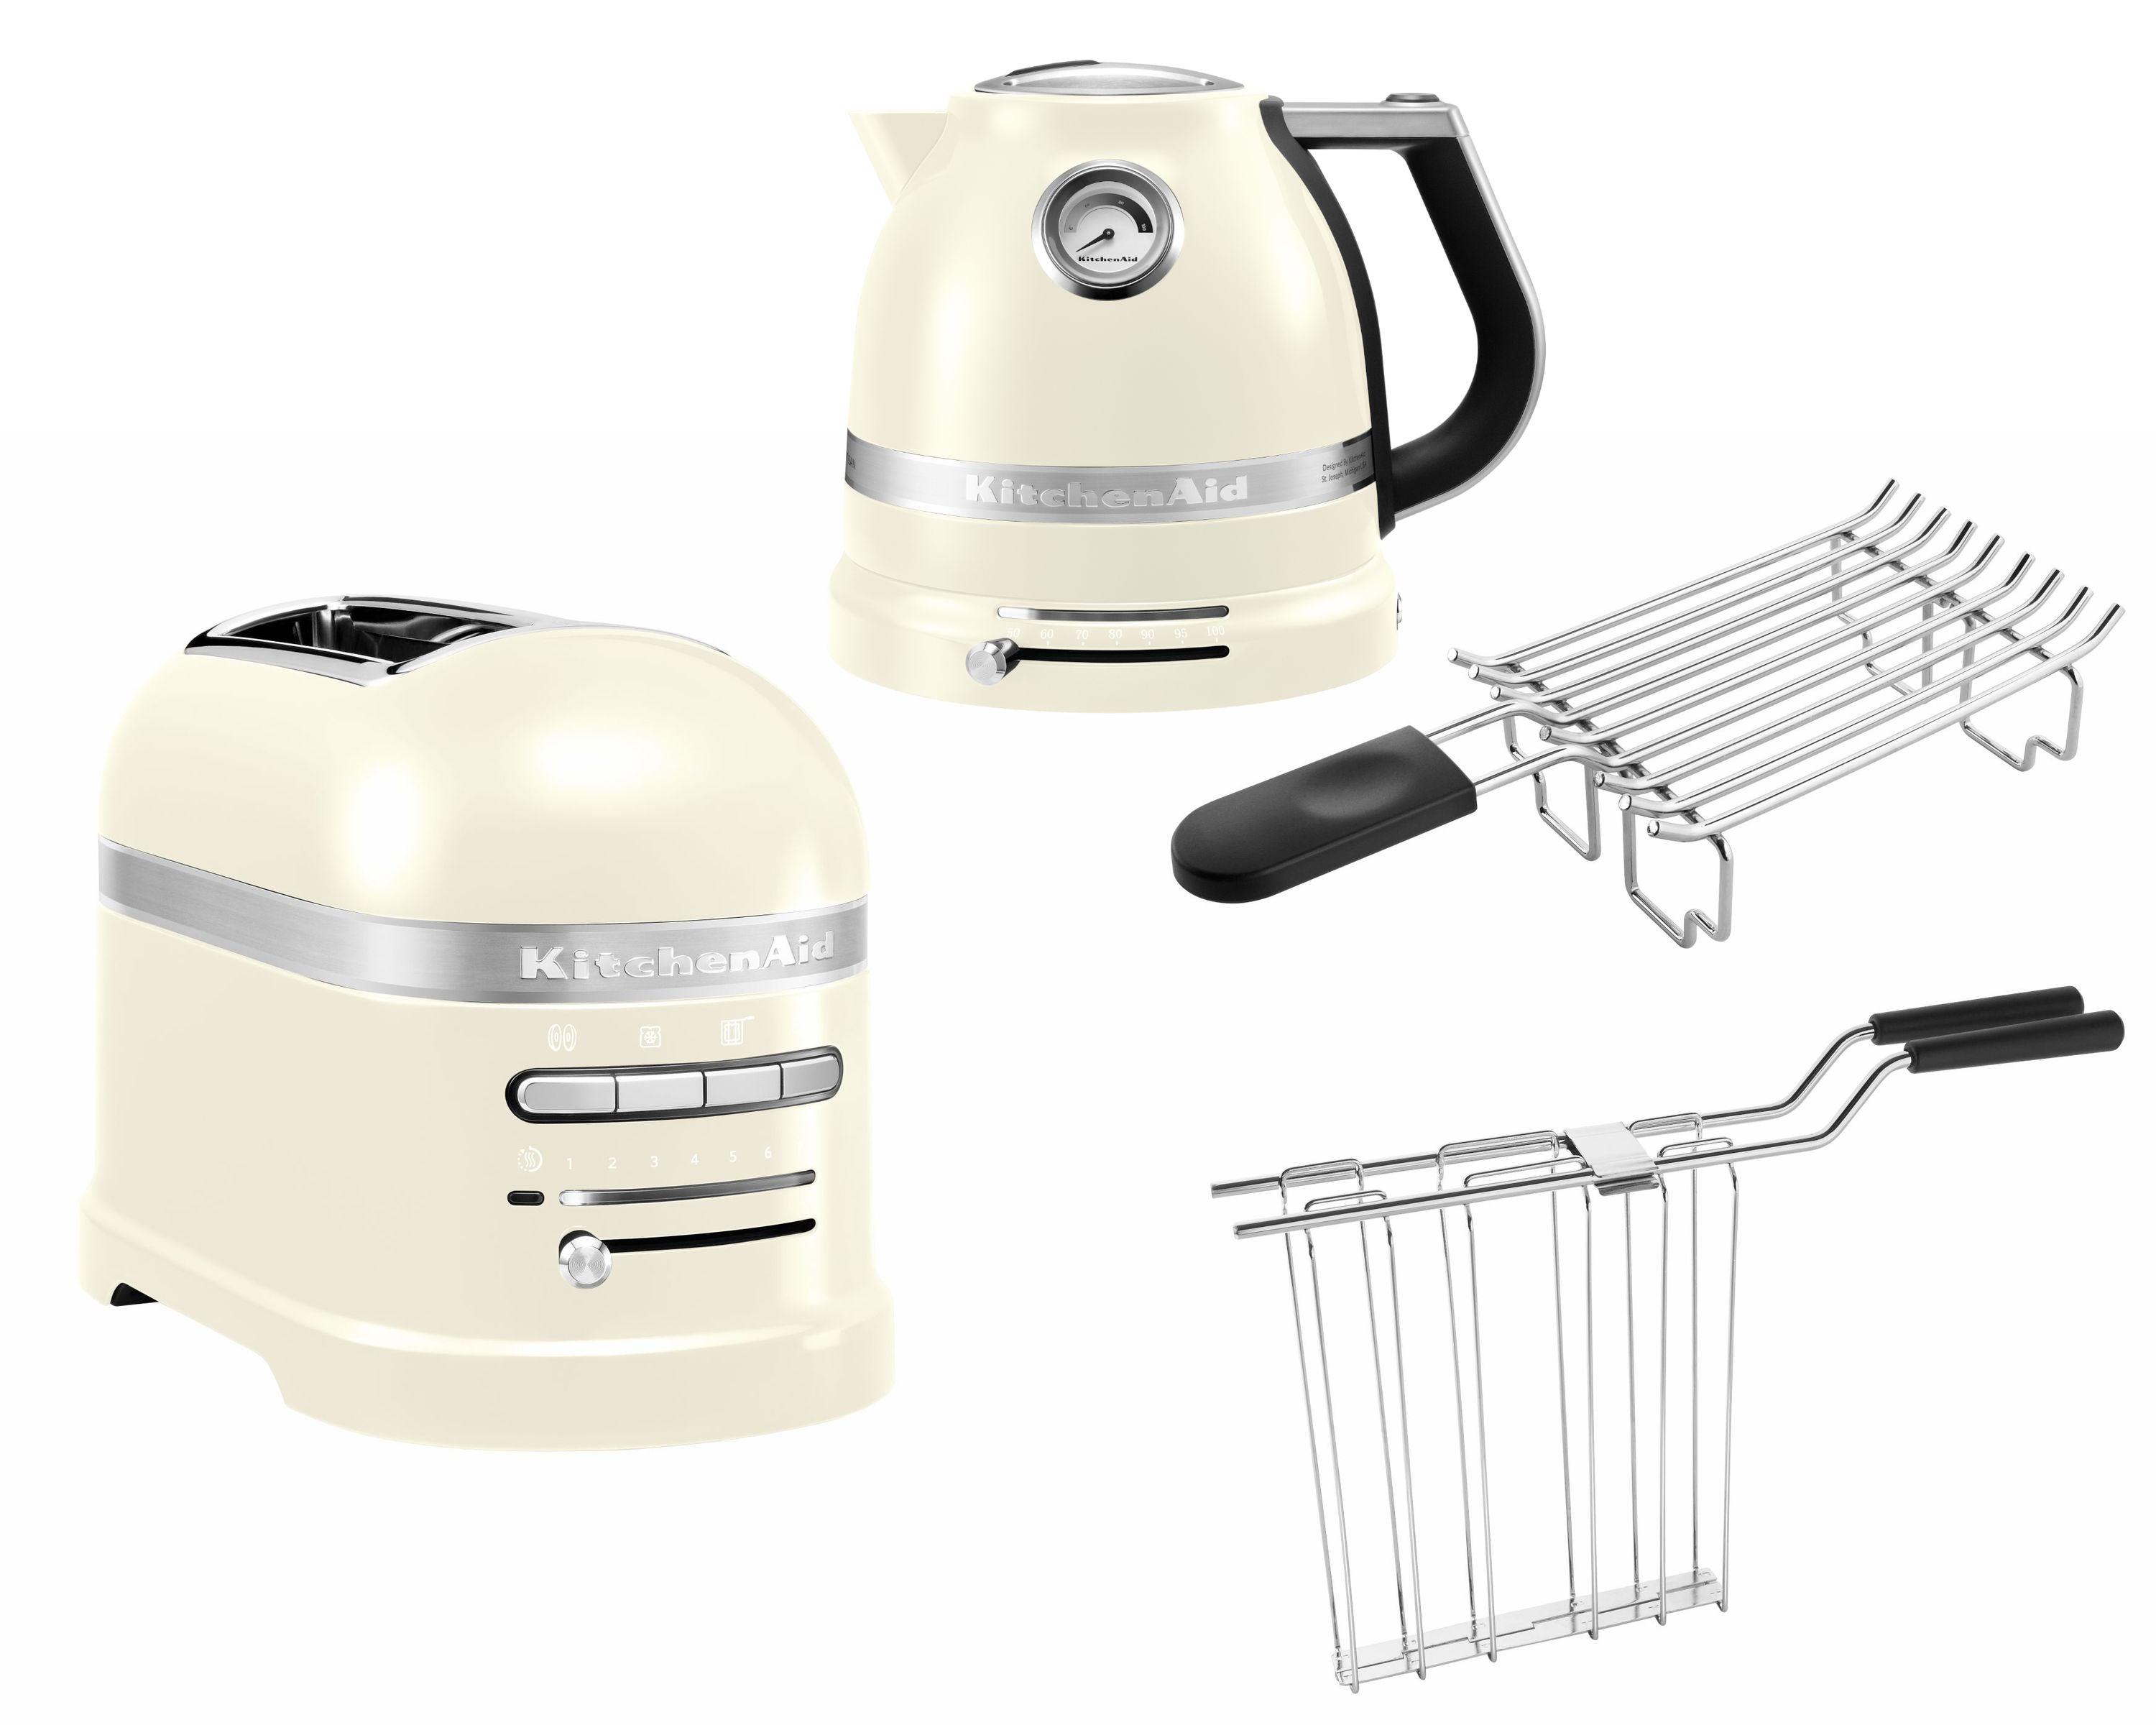 KitchenAid Artisan Frühstücksset inkl. Wasserkocher 5KEK1522, 2 Scheiben Toaster 5KMT2204 und Brötchenaufsatz